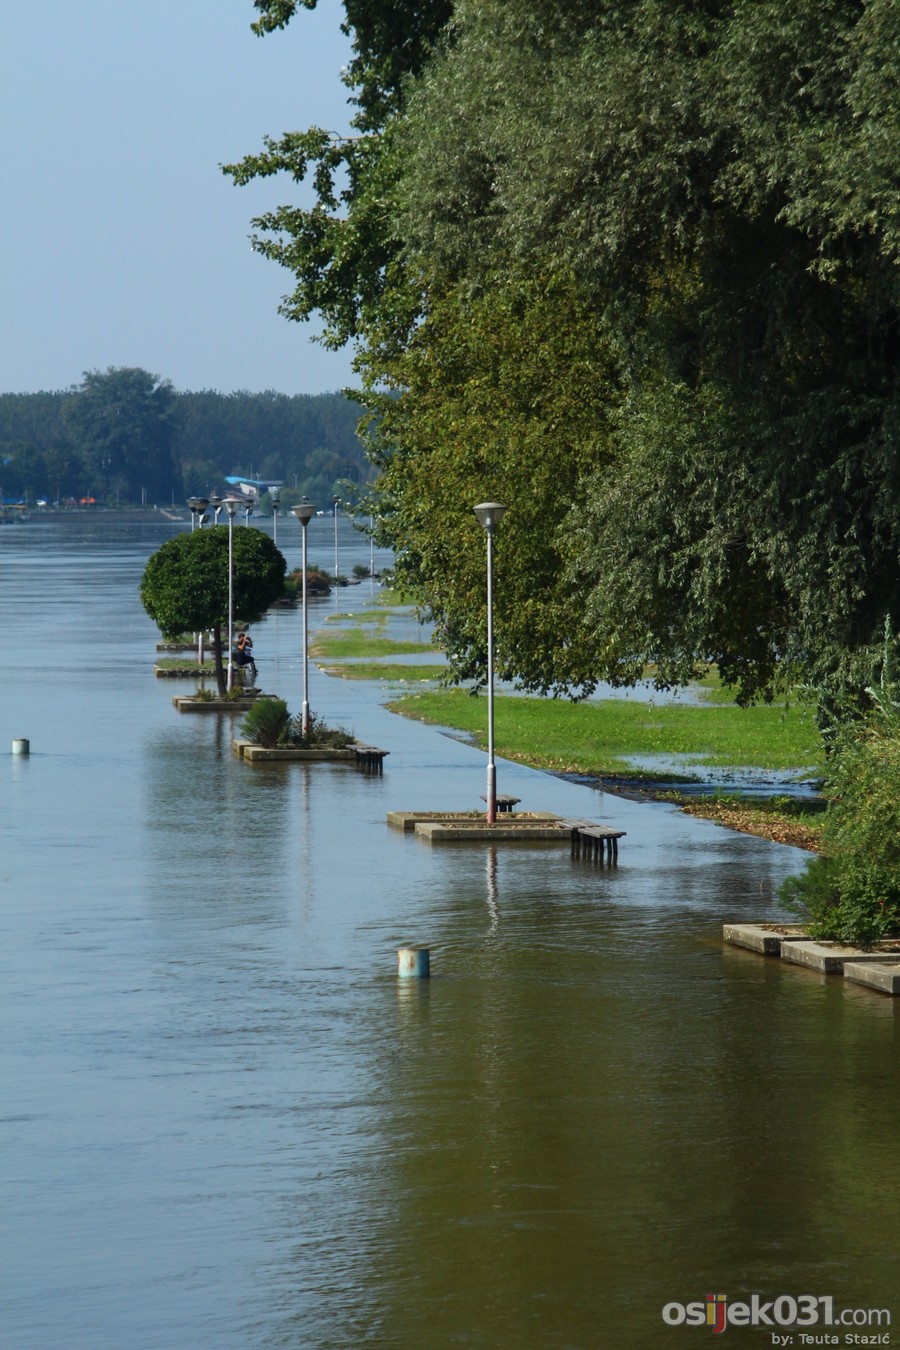 Drava se izlila [poplava, rujan 2014. #1]

Kljune rijei: drava poplava